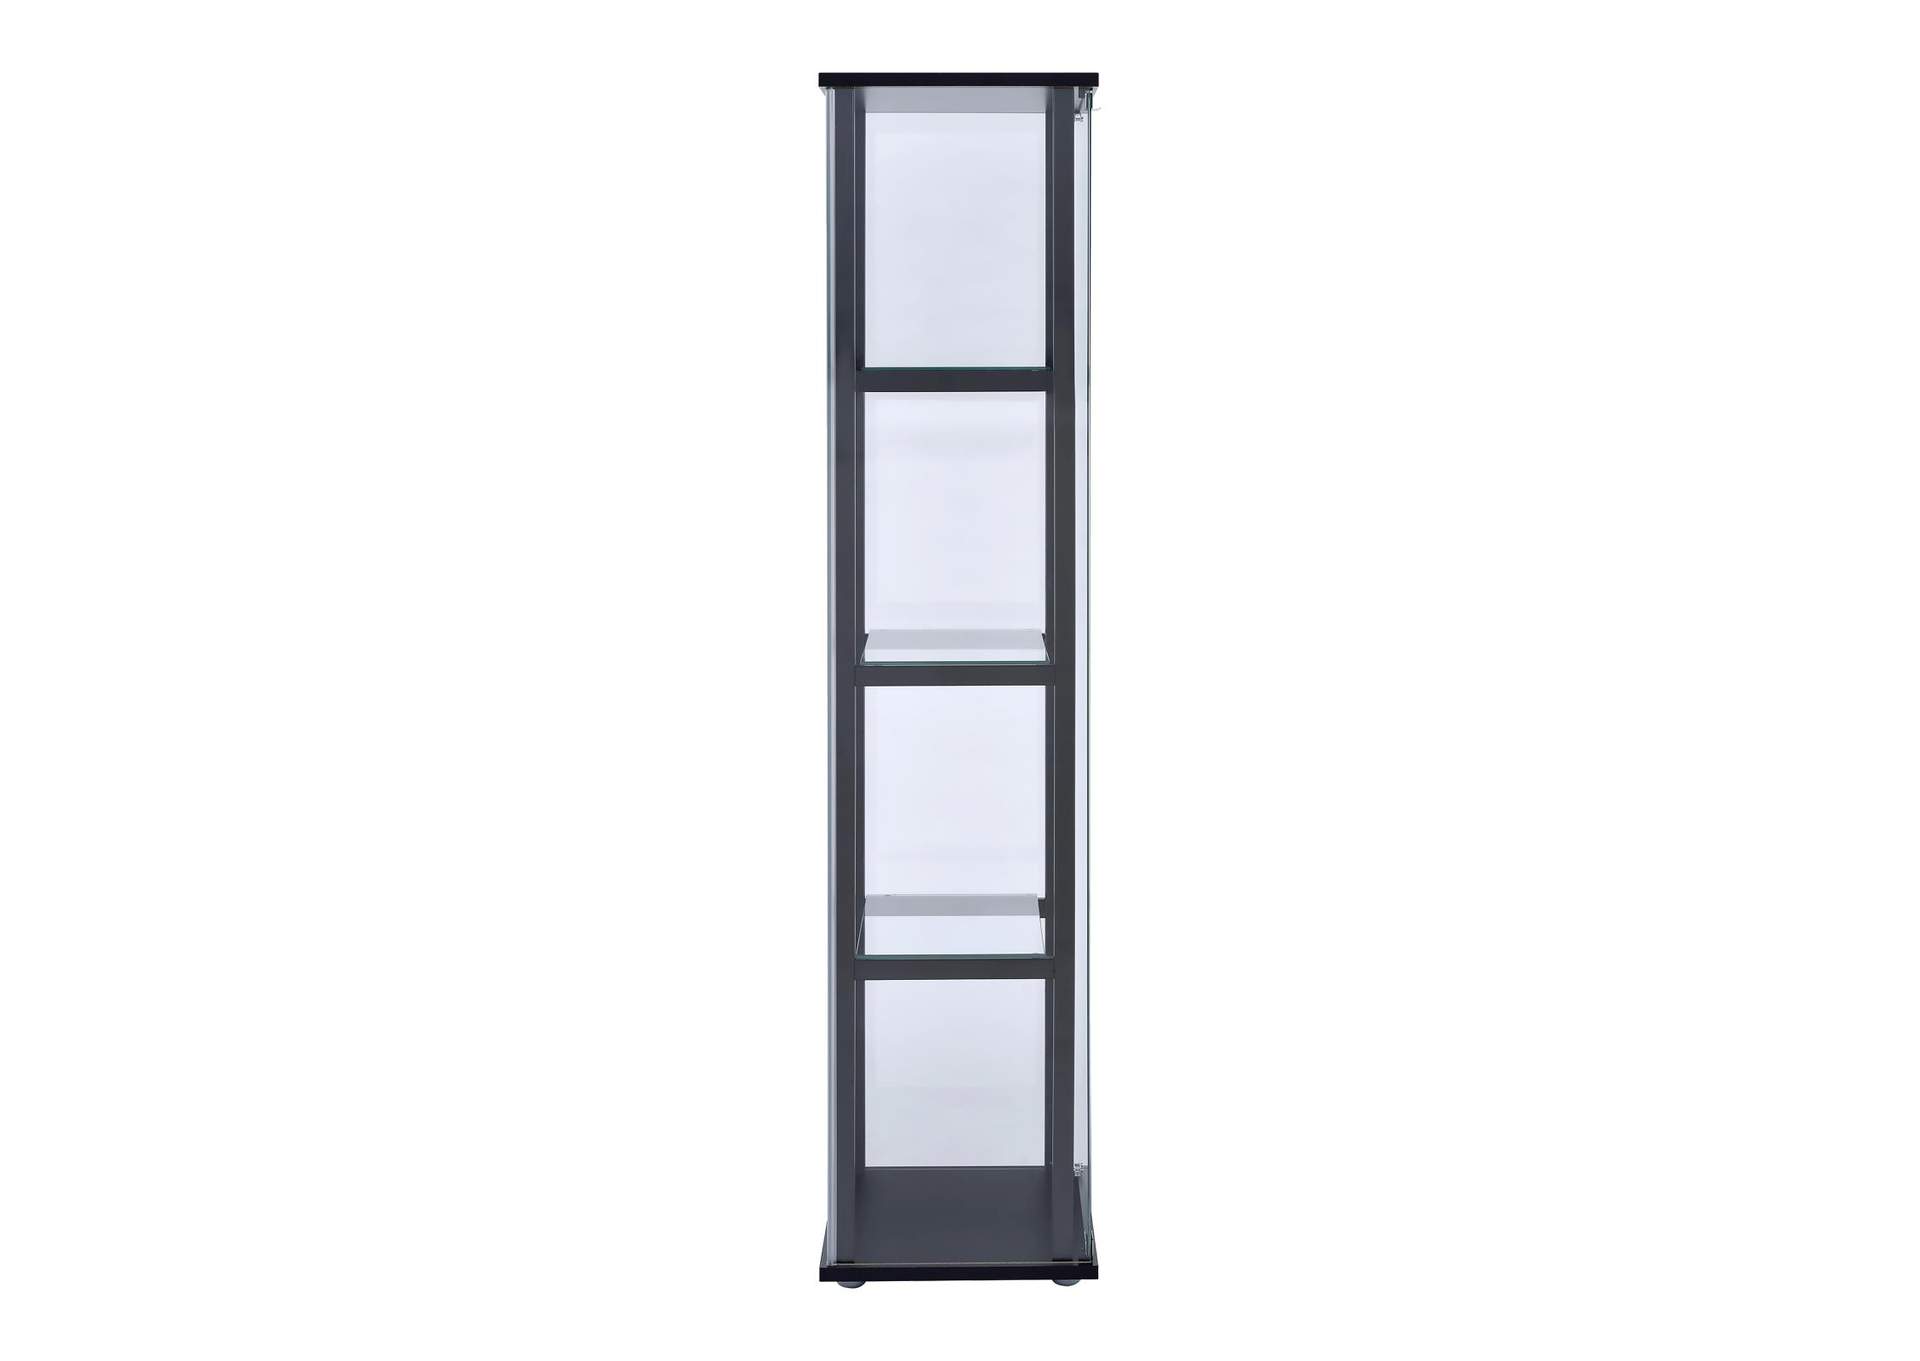 4-shelf Glass Curio Cabinet Black and Clear,Coaster Furniture